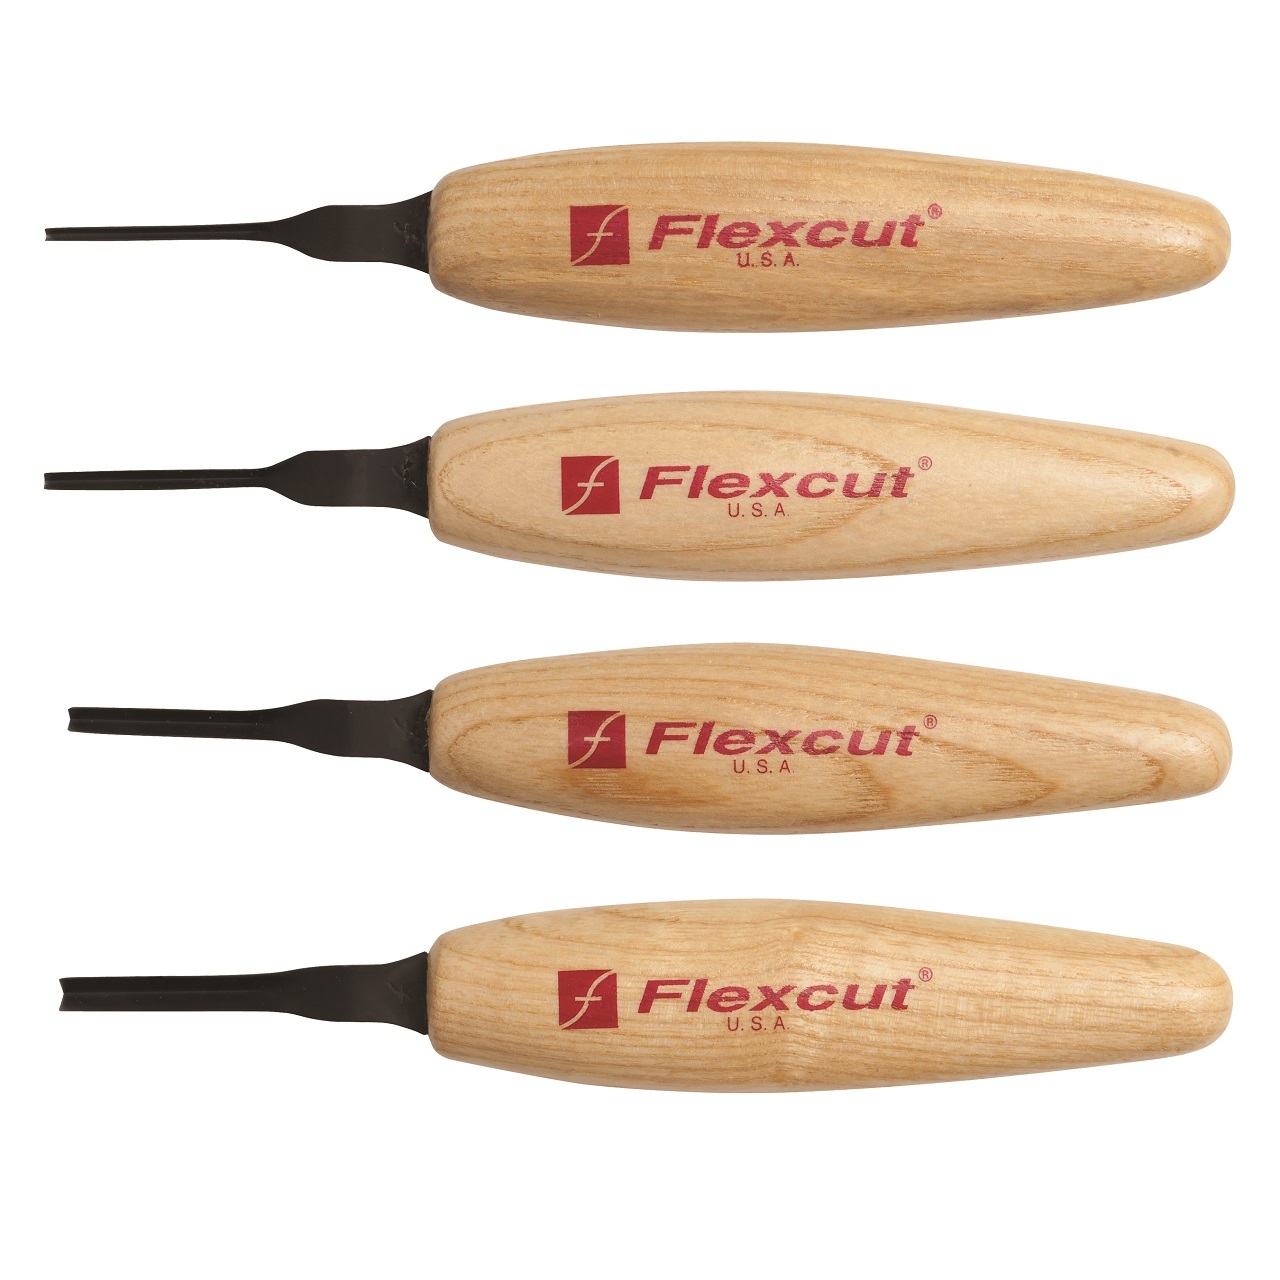 Flexcut Carving Tools - Brands